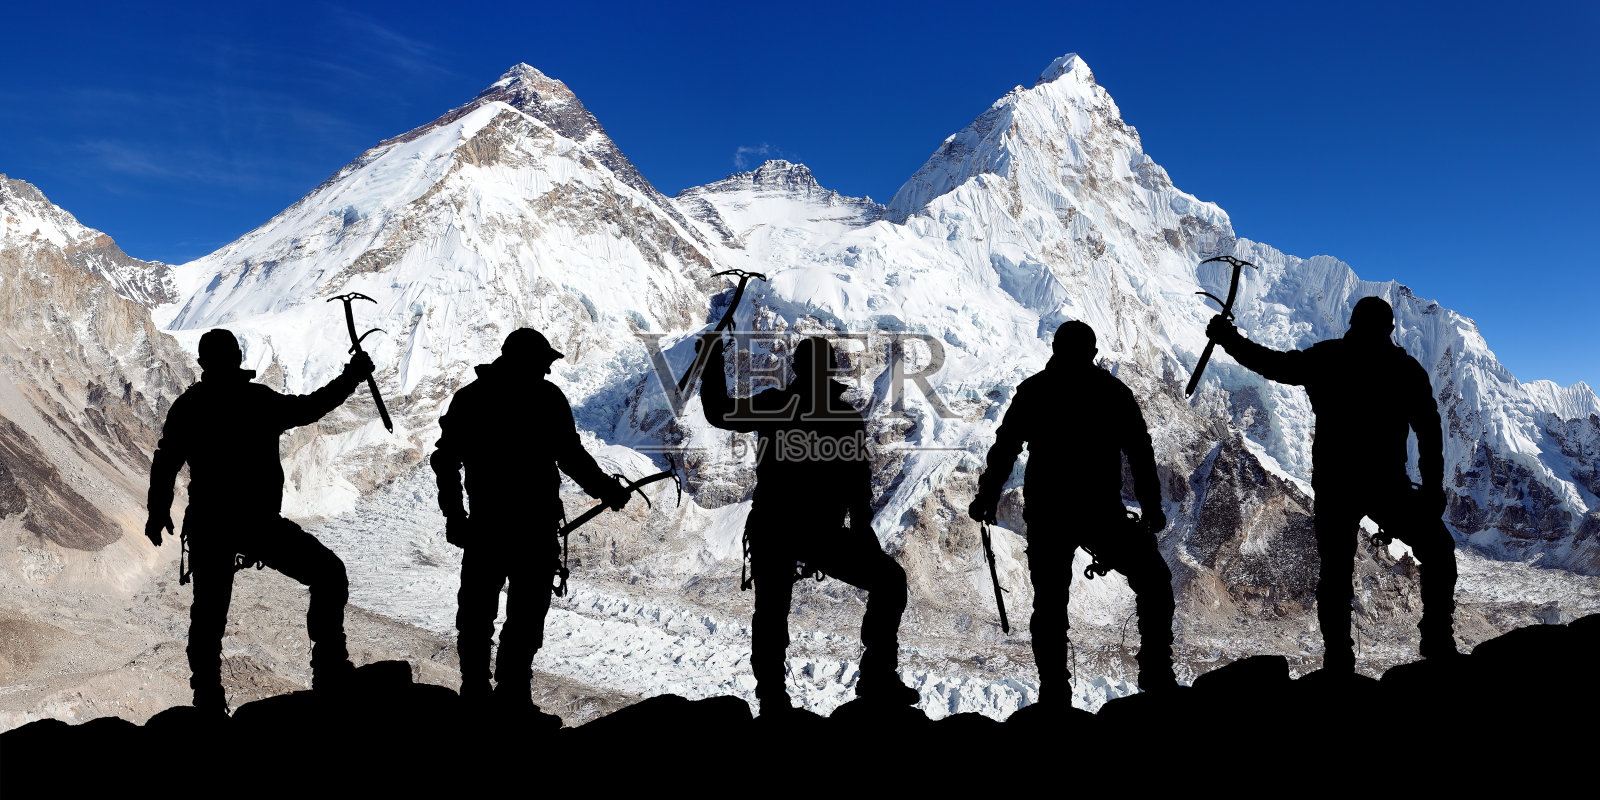 珠穆朗玛峰和洛子山以及登山者的剪影照片摄影图片